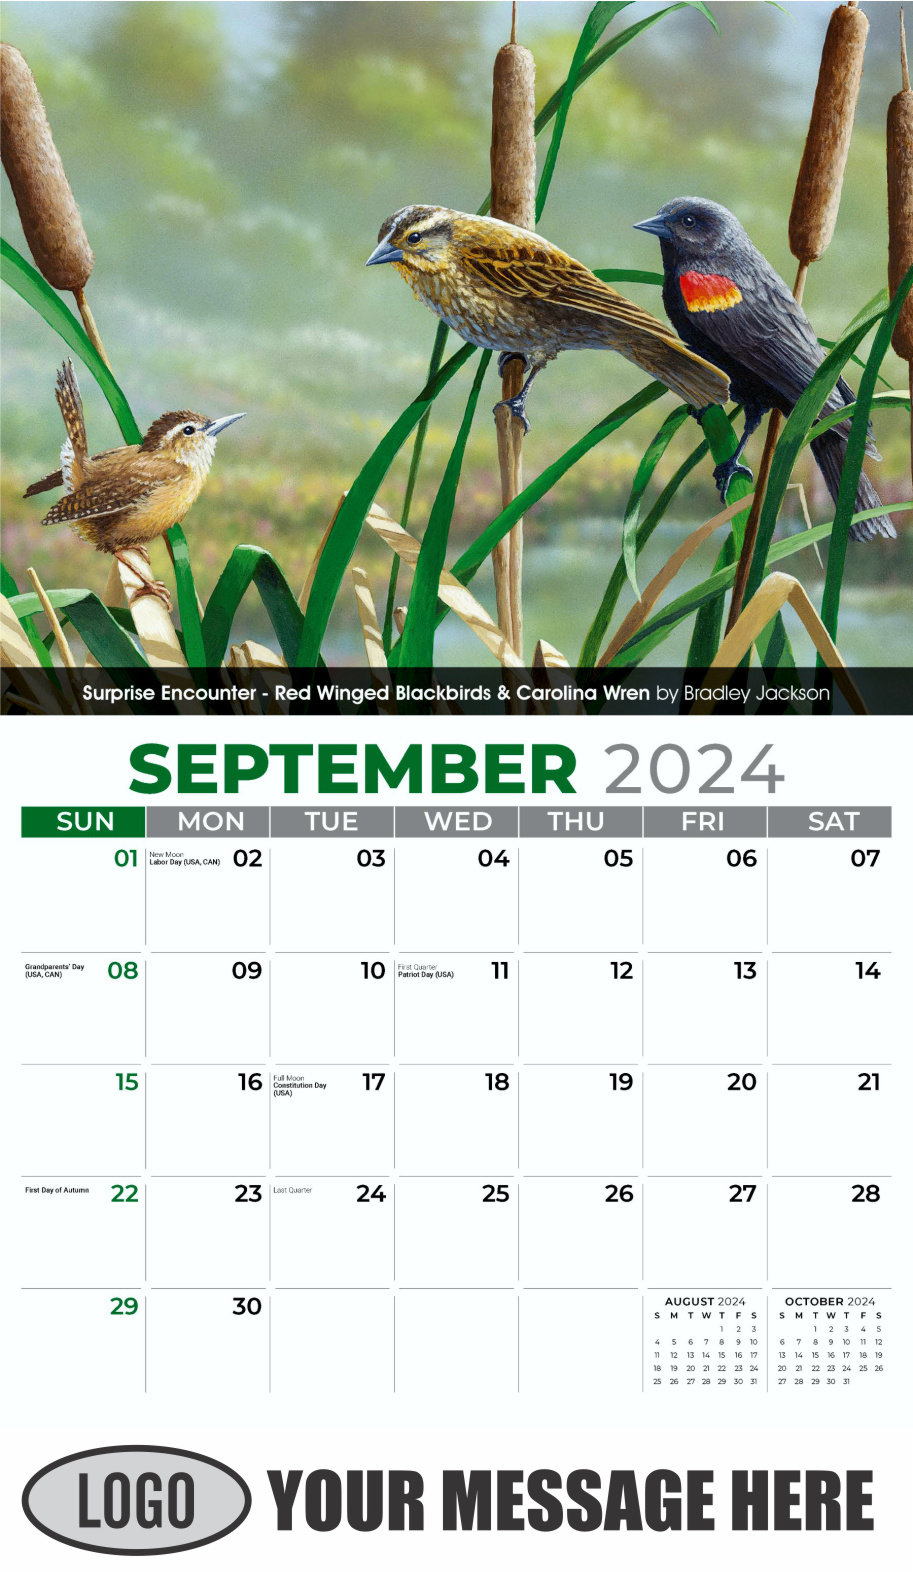 Garden Birds 2024 Business Promotional Calendar - September